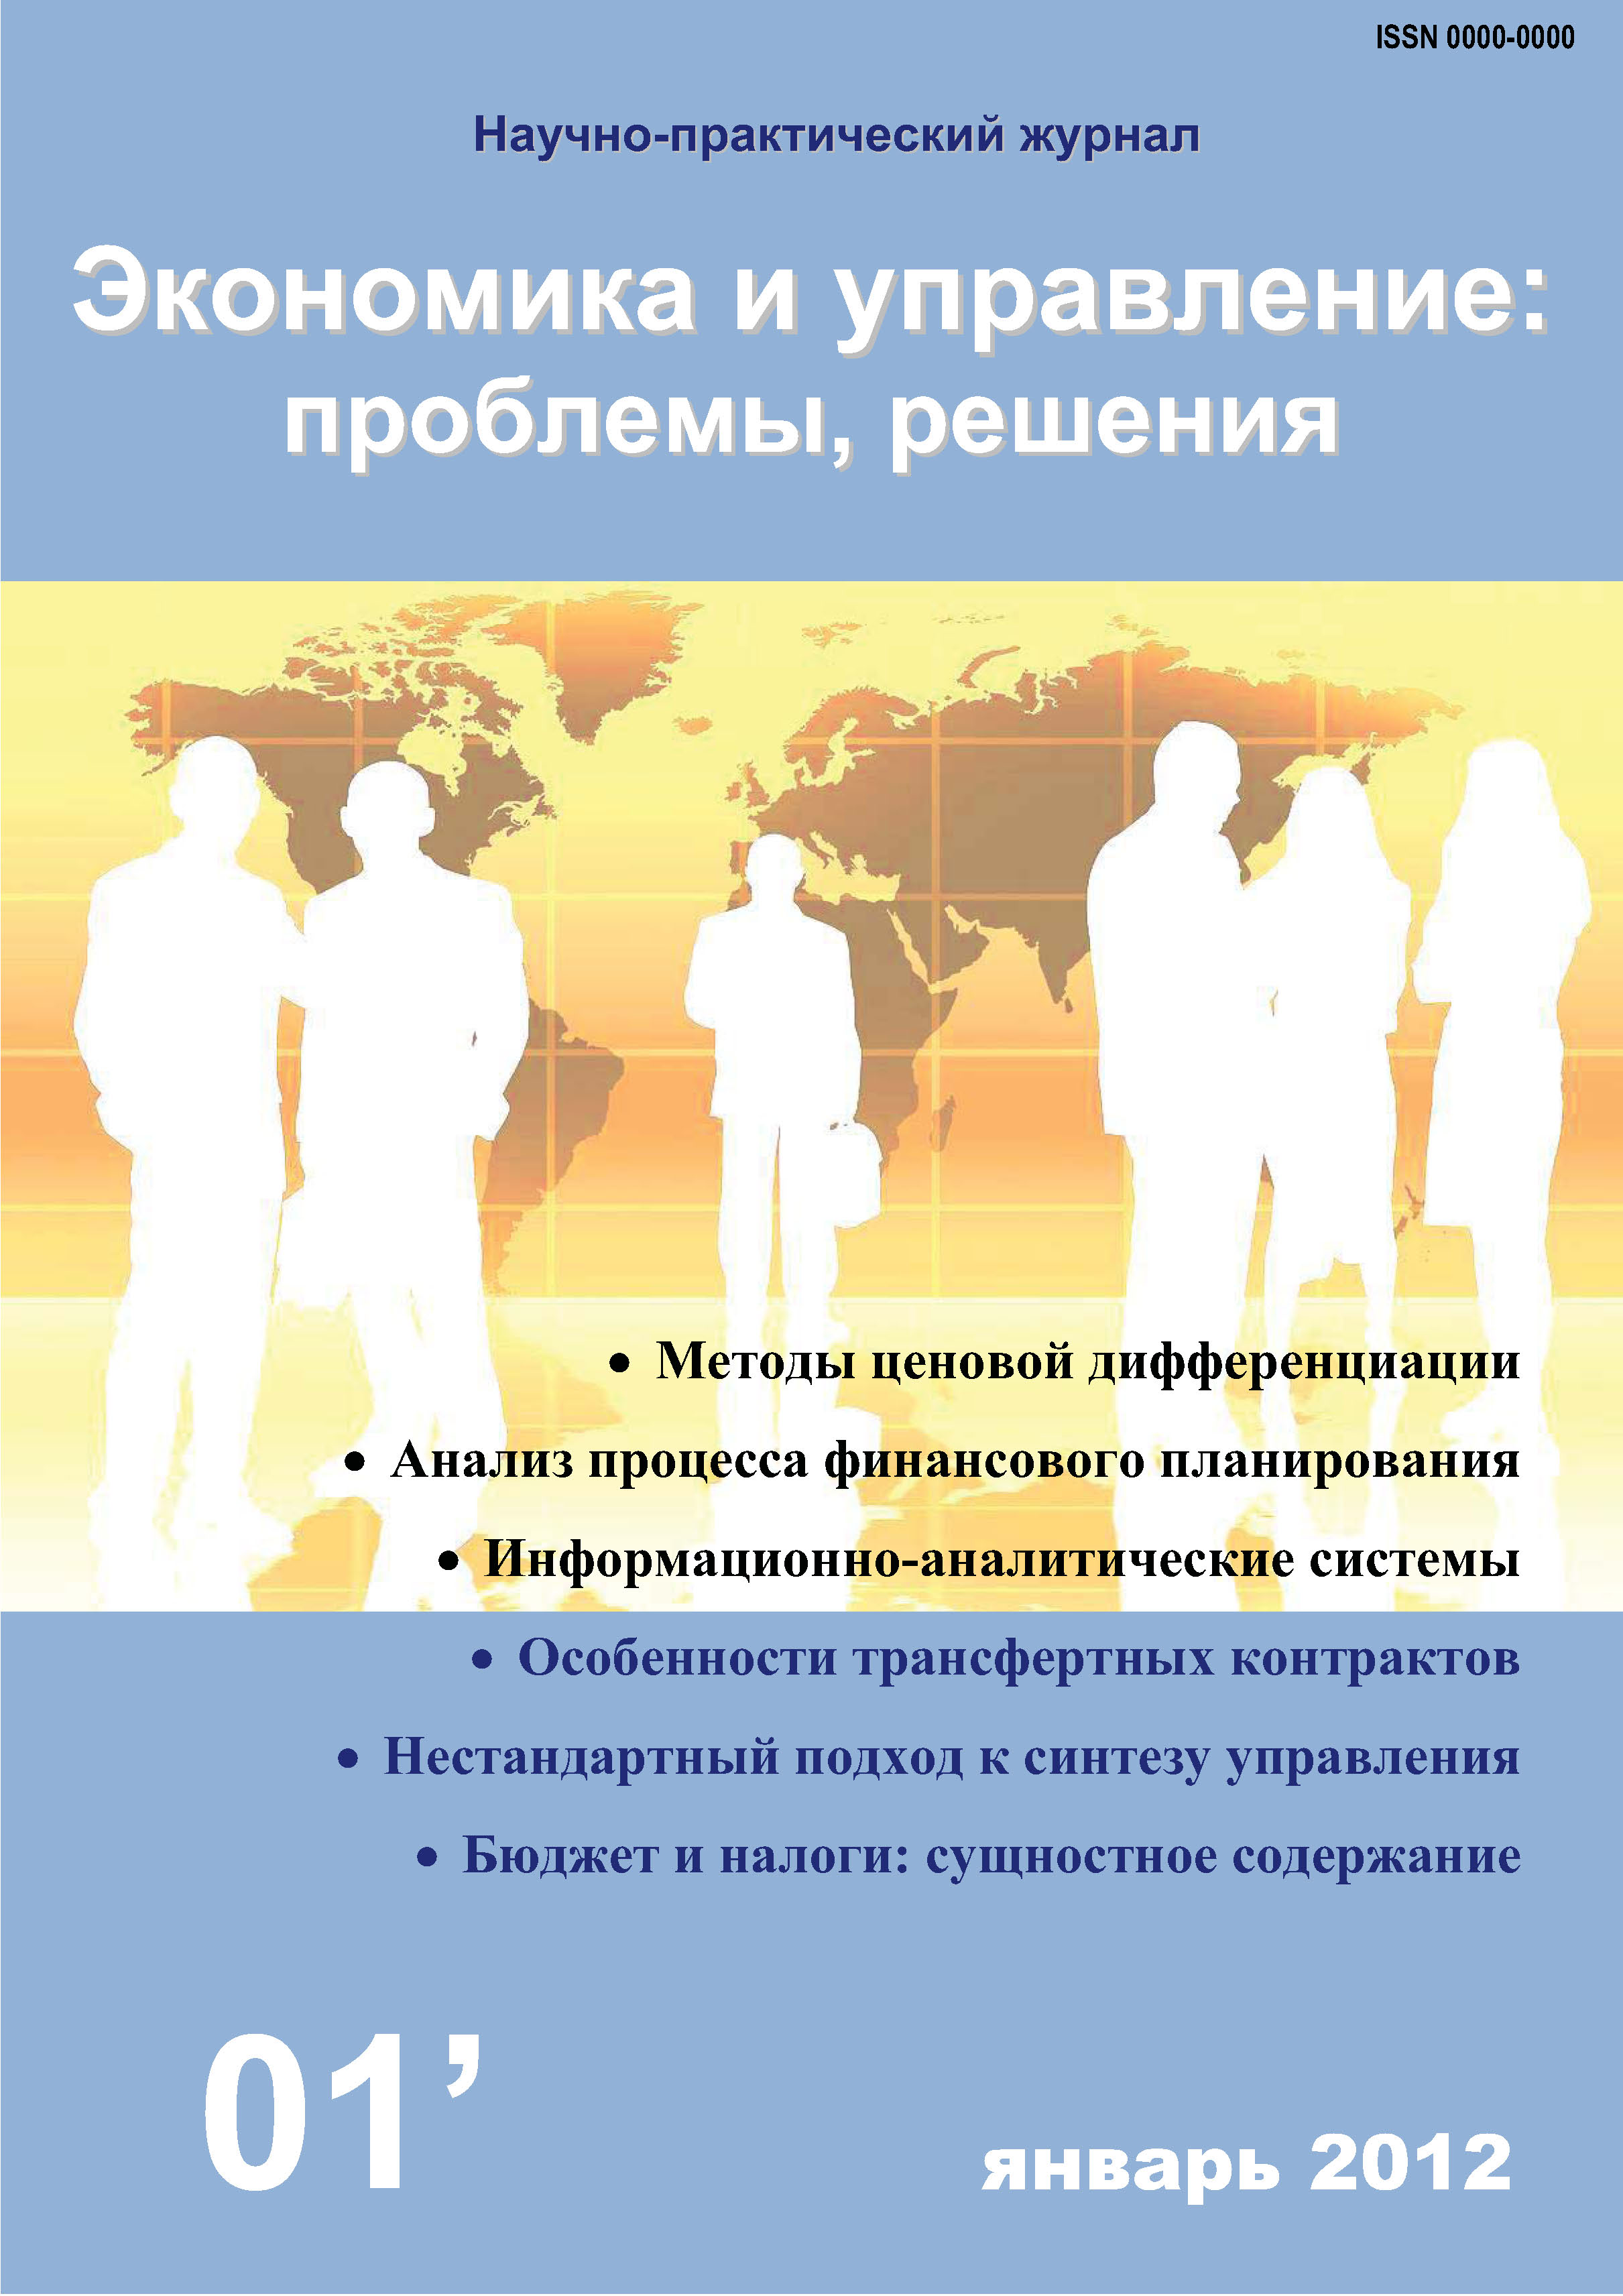 Экономика и управление: проблемы, решения №01/2012